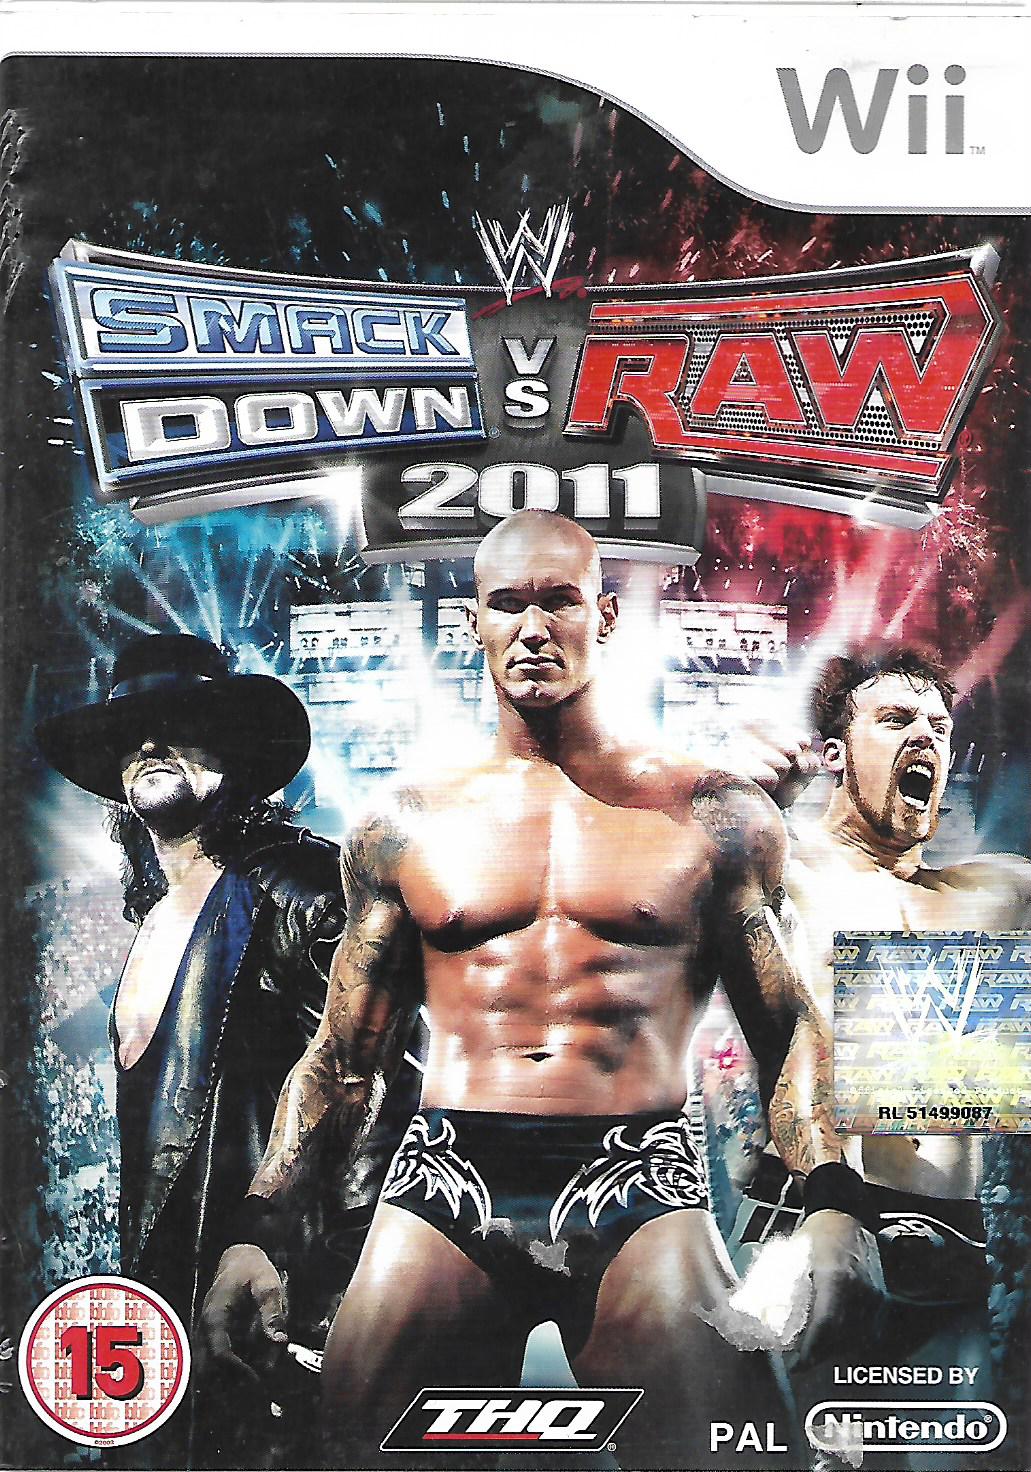 WWE SMACK DOWN VS RAW 2011 (WII - bazar)